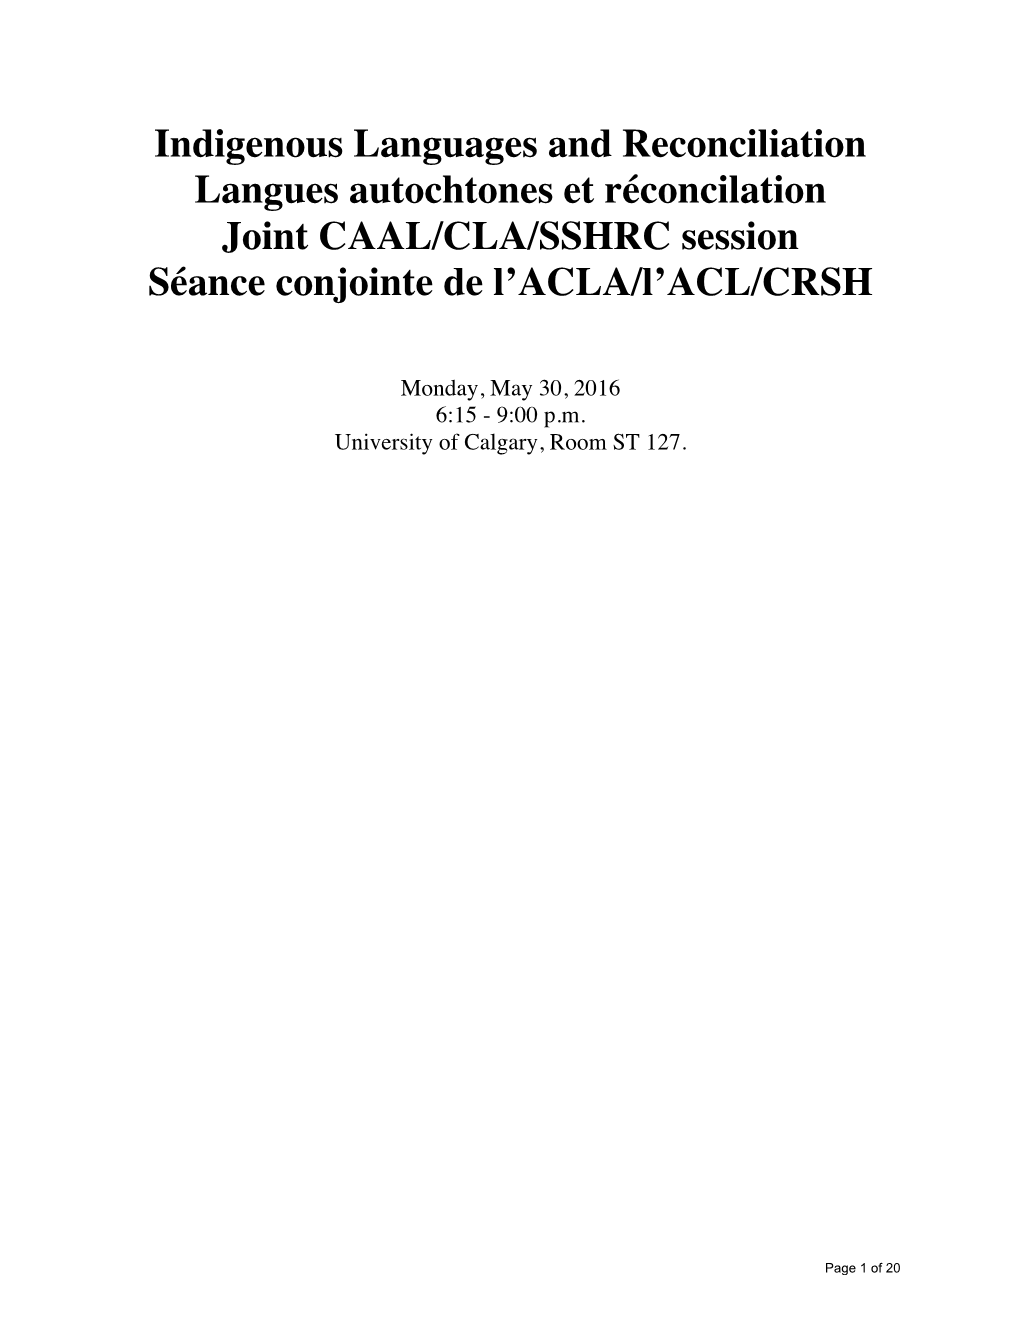 Indigenous Languages and Reconciliation Langues Autochtones Et Réconcilation Joint CAAL/CLA/SSHRC Session Séance Conjointe De L’ACLA/L’ACL/CRSH